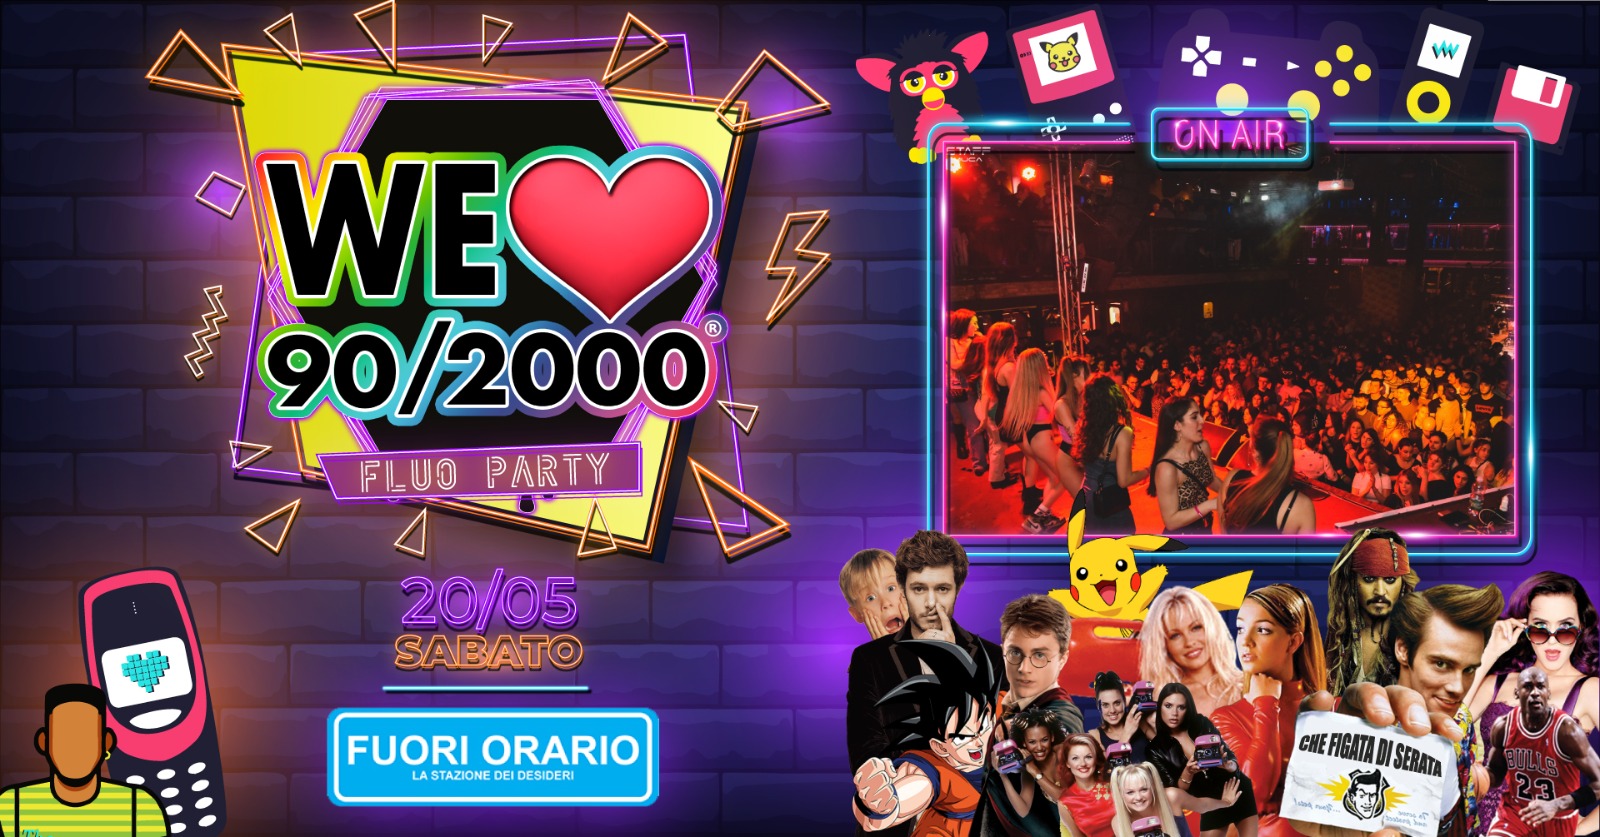 WE LOVE 90/2000 FLUO PARTY - Fuori Orario